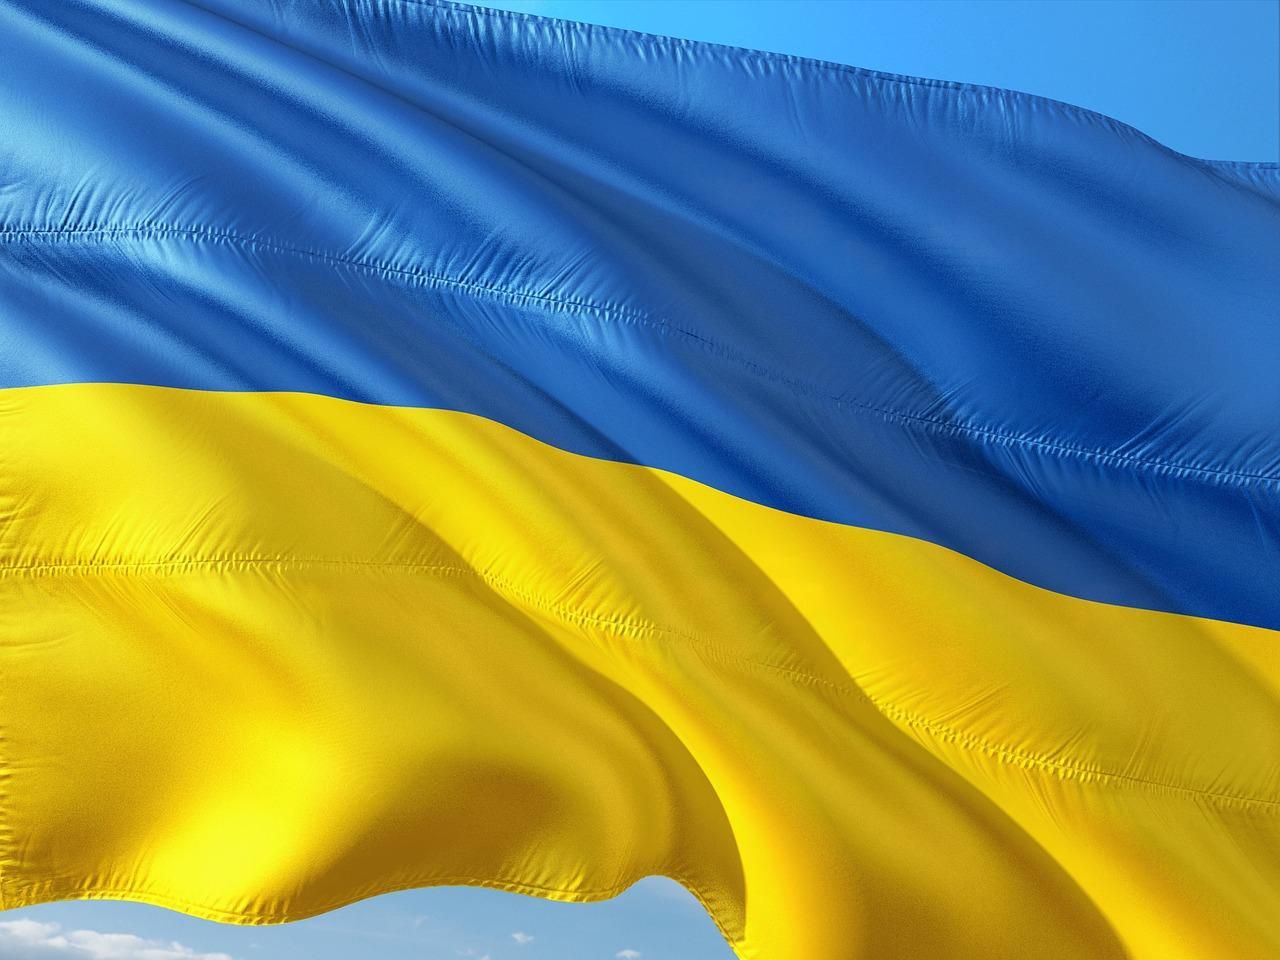 Картинки с Днем Государственного Флага Украины 2021: поздравления, открытки